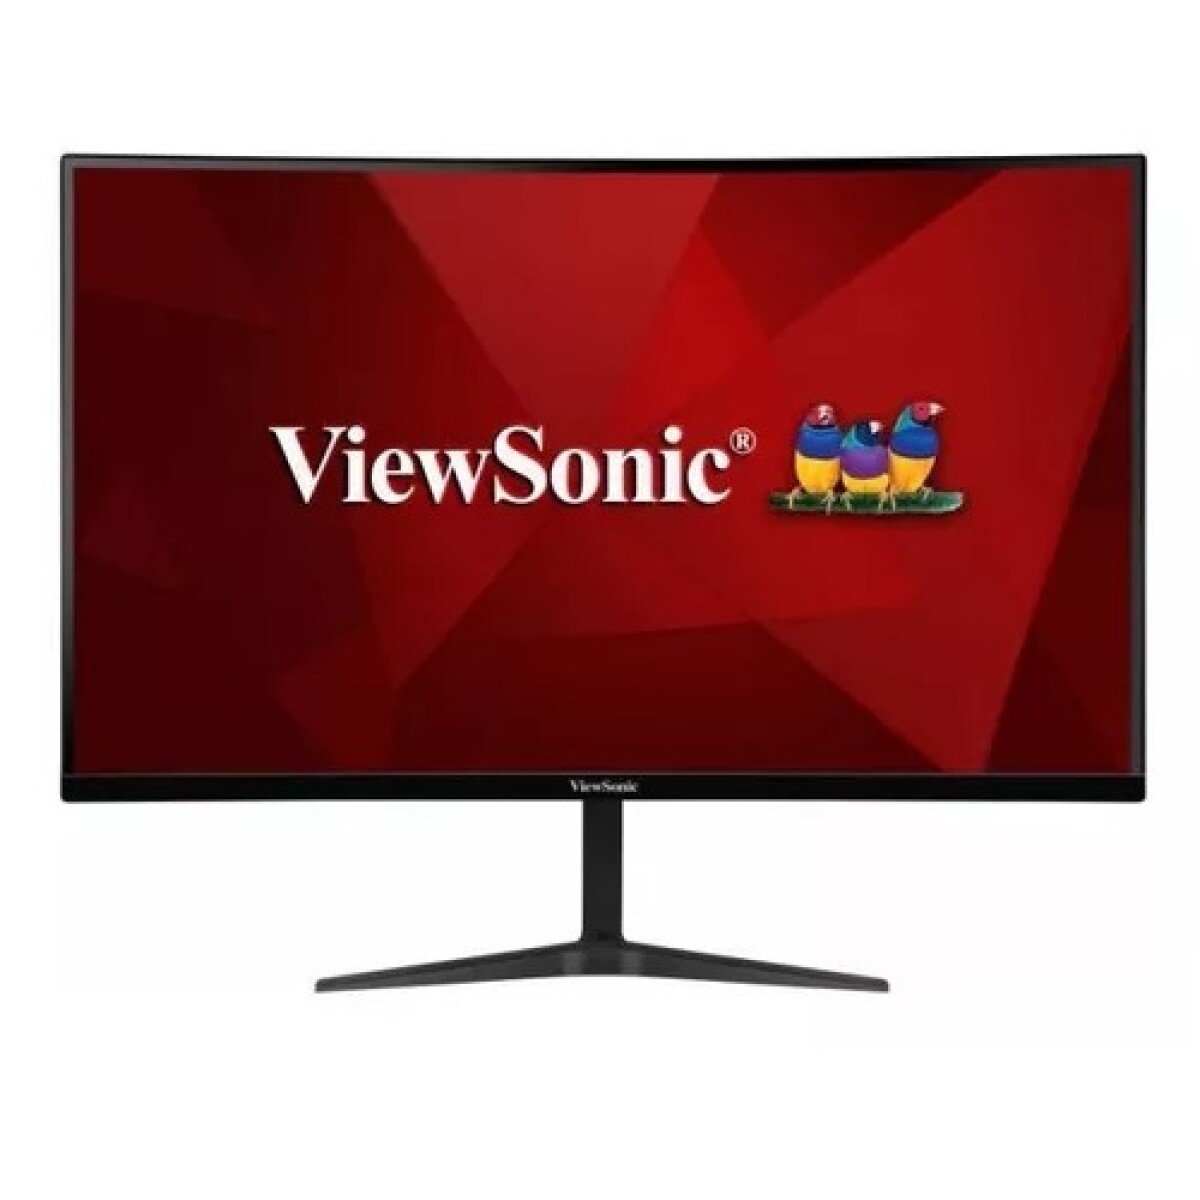 Viewsonic Monitor Gamer Vx2718-pc-mhd Fhd Hdmi 